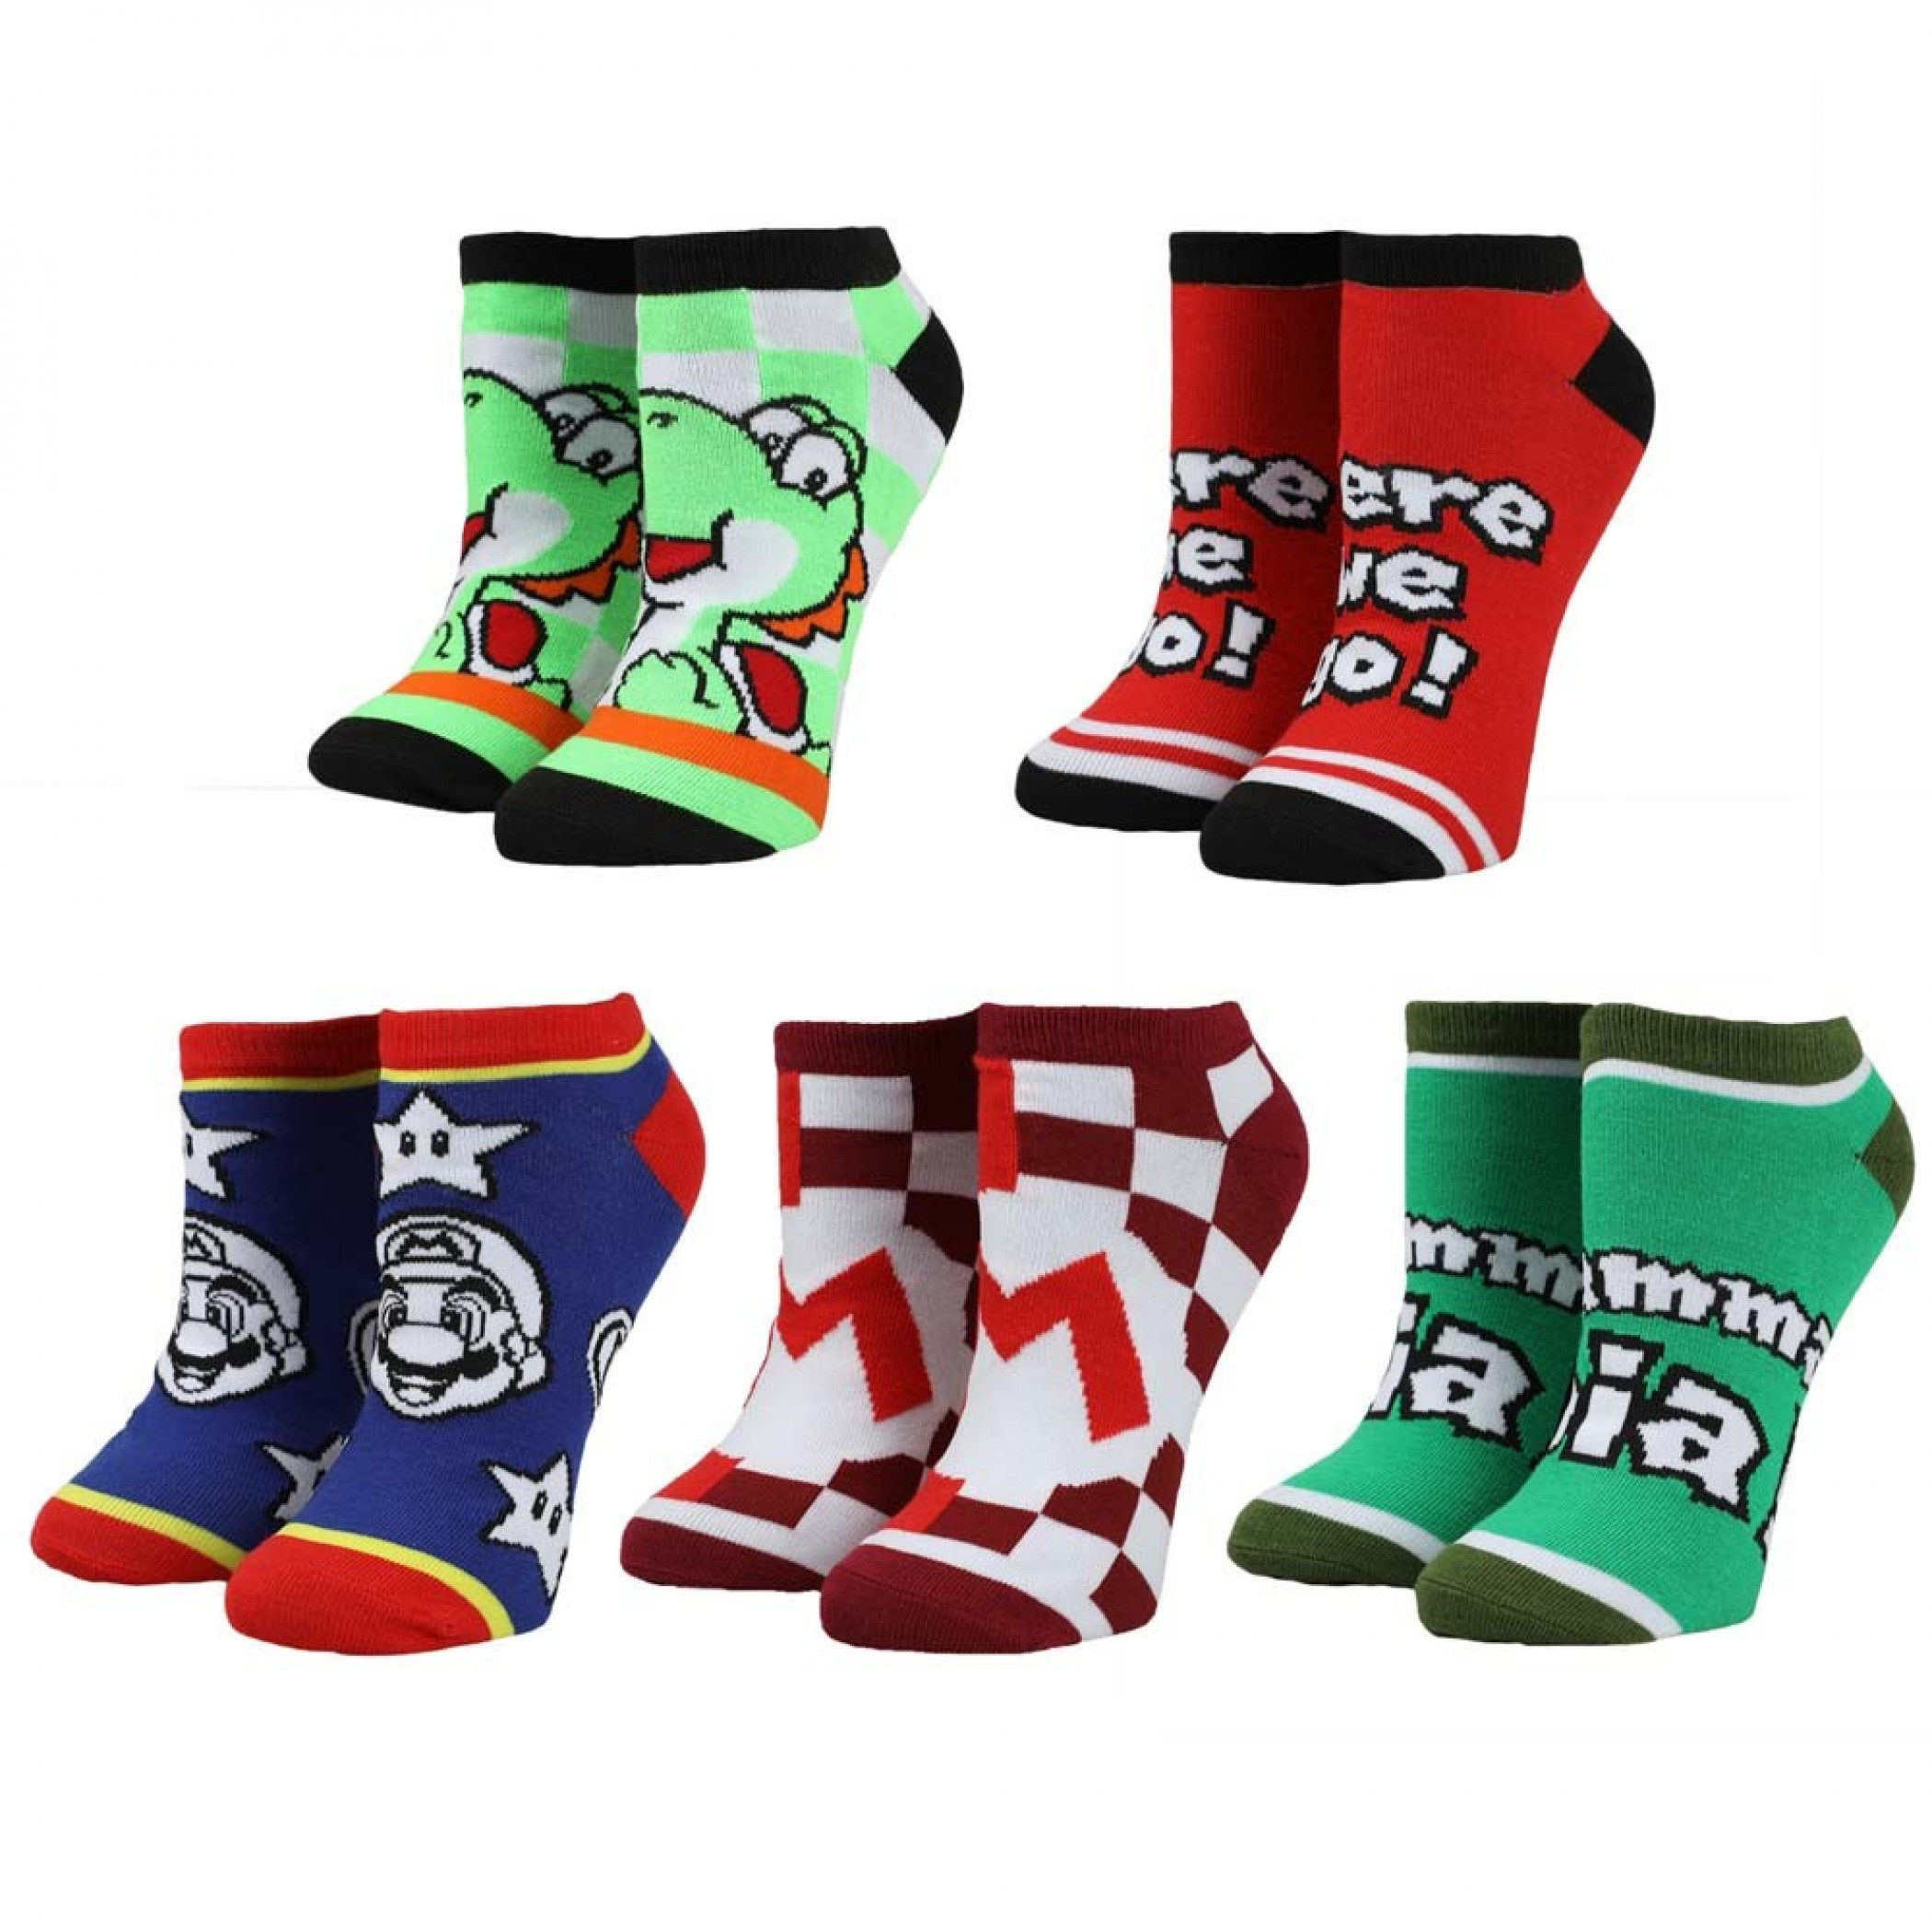 Super Mario 5-Pair Pack of Ankle Socks